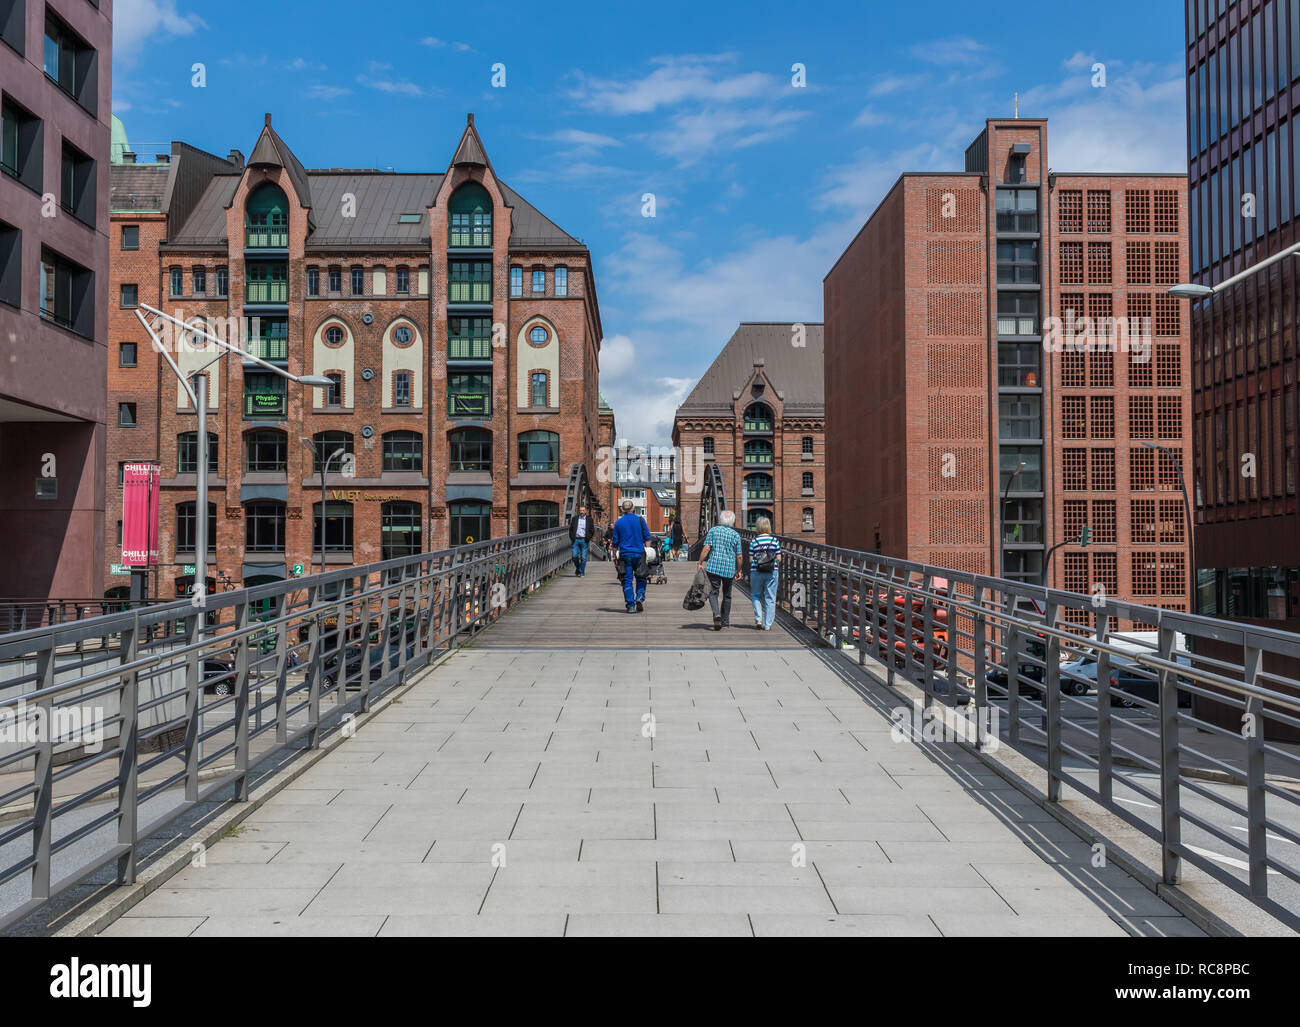 Hambourg, Allemagne - deuxième plus grande ville d'Allemagne, Hambourg a été classé site du patrimoine mondial de l'Unesco en raison de son architecture particulière Banque D'Images